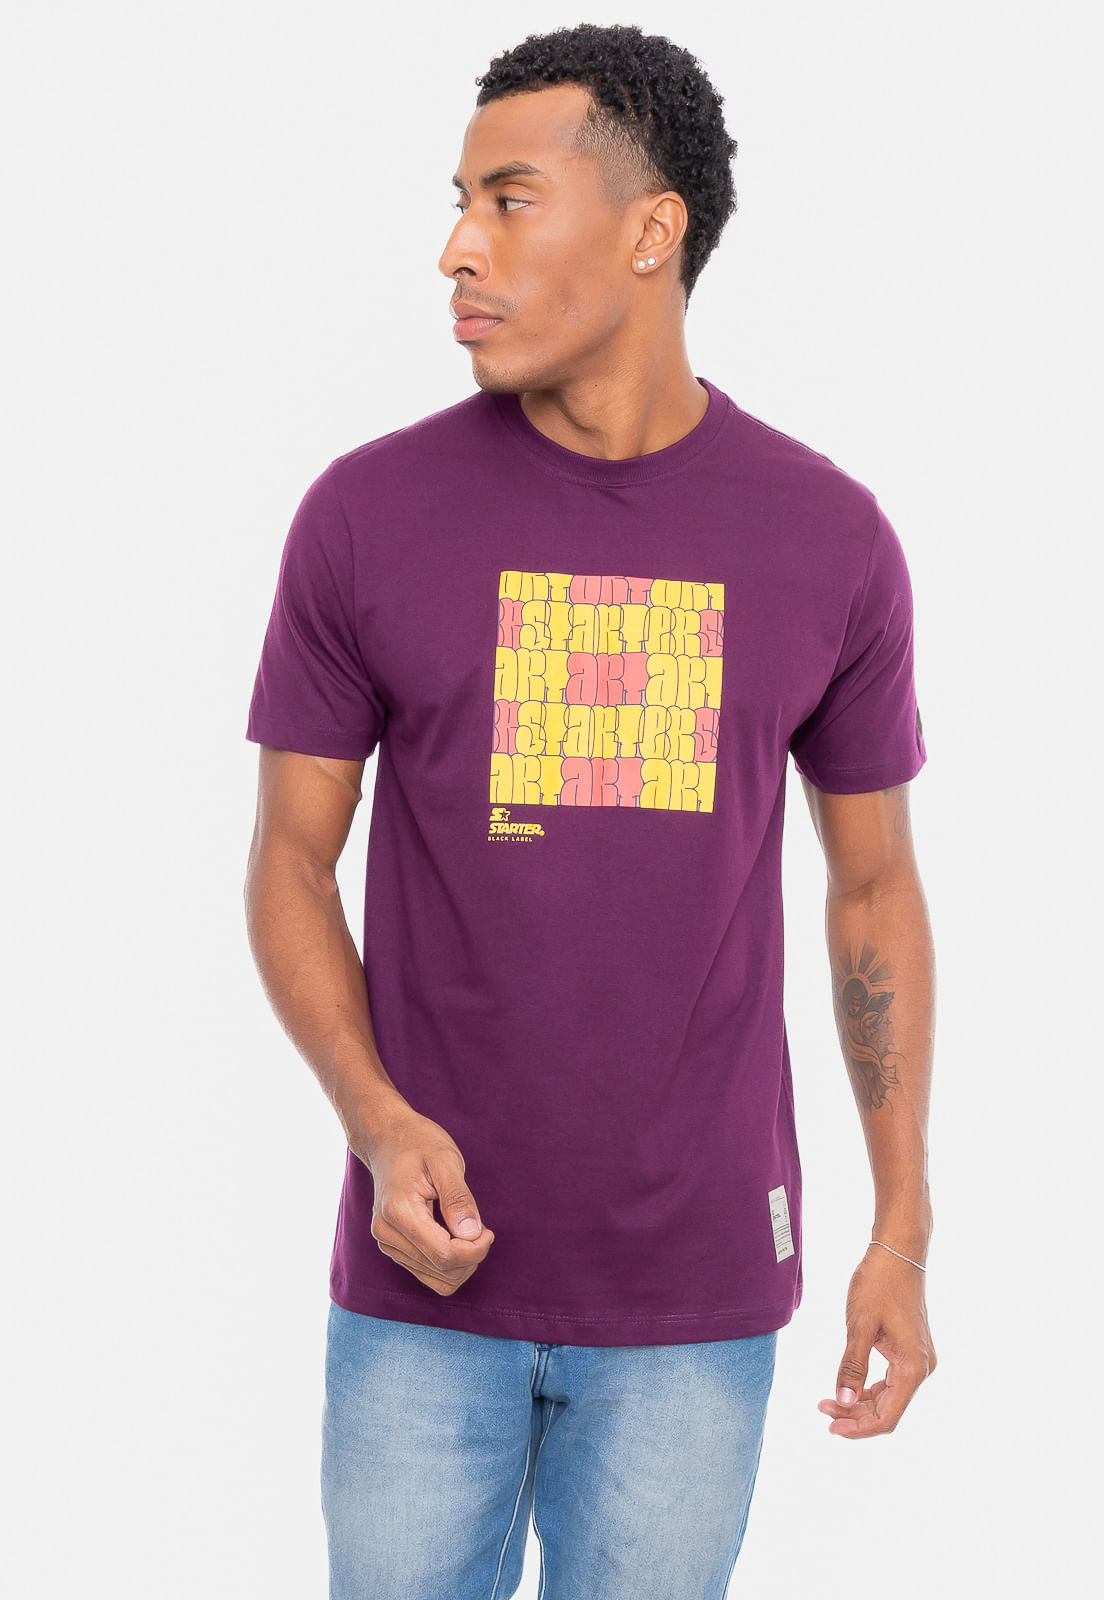 Camiseta Starter ART Vinho - ecko